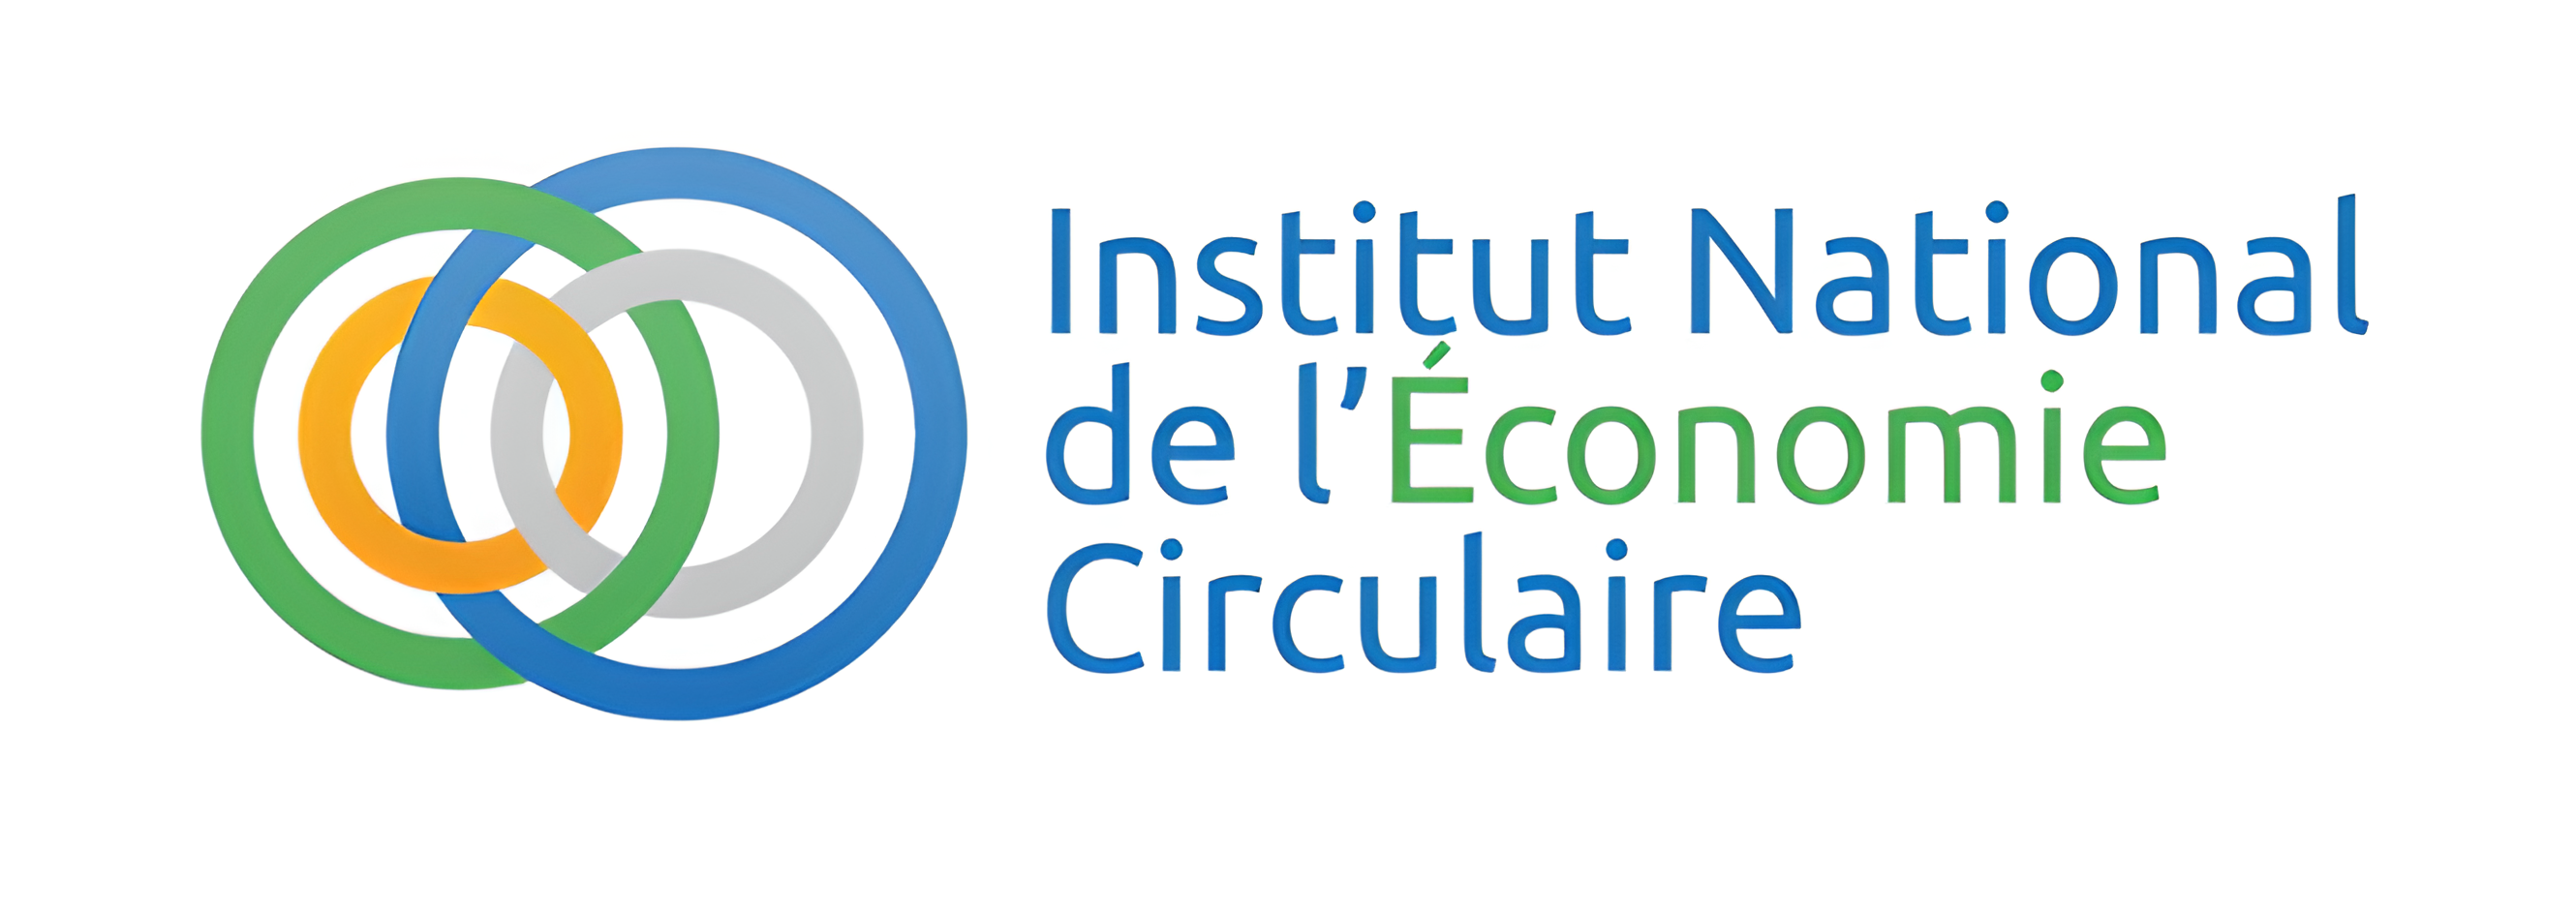 institut national economie circulaire vesto article